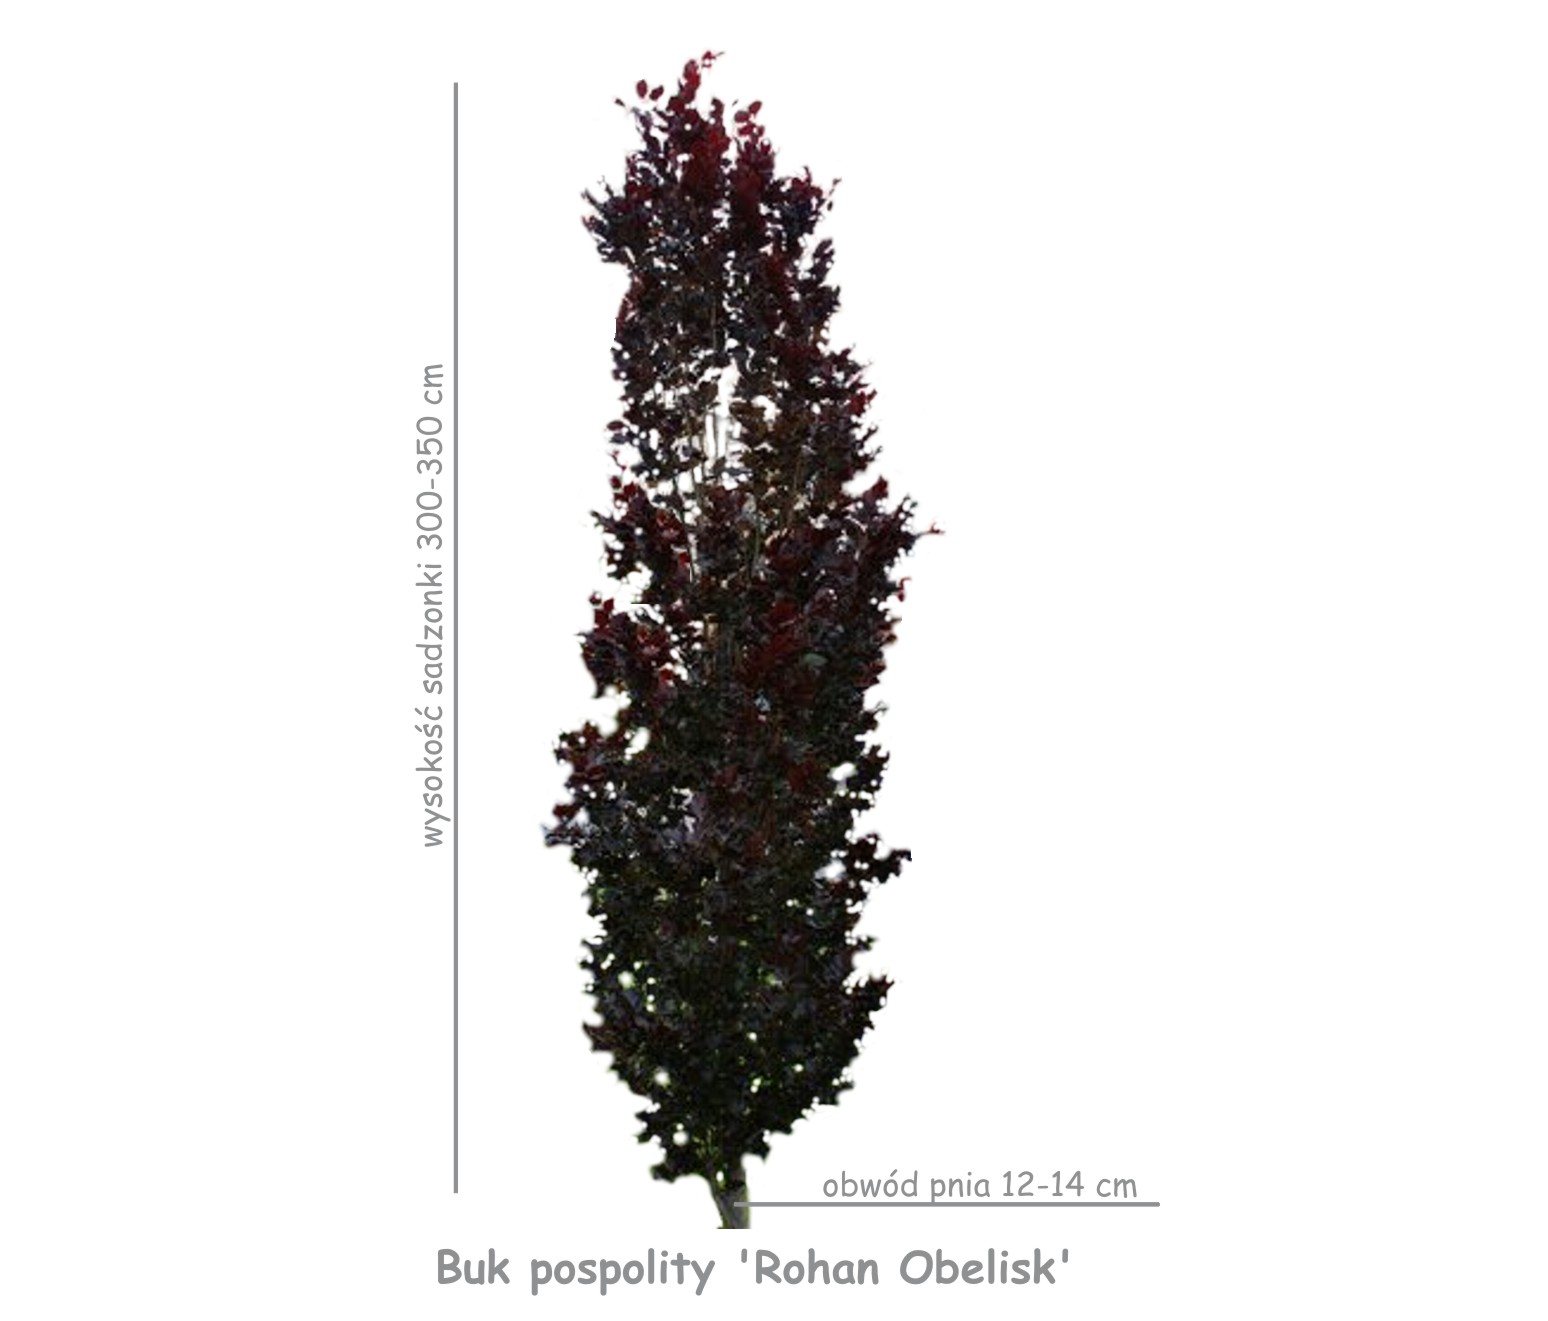 Buk pospolity 'Rohan Obelisk' sadzonka o obwodzie pnia 12-14 cm